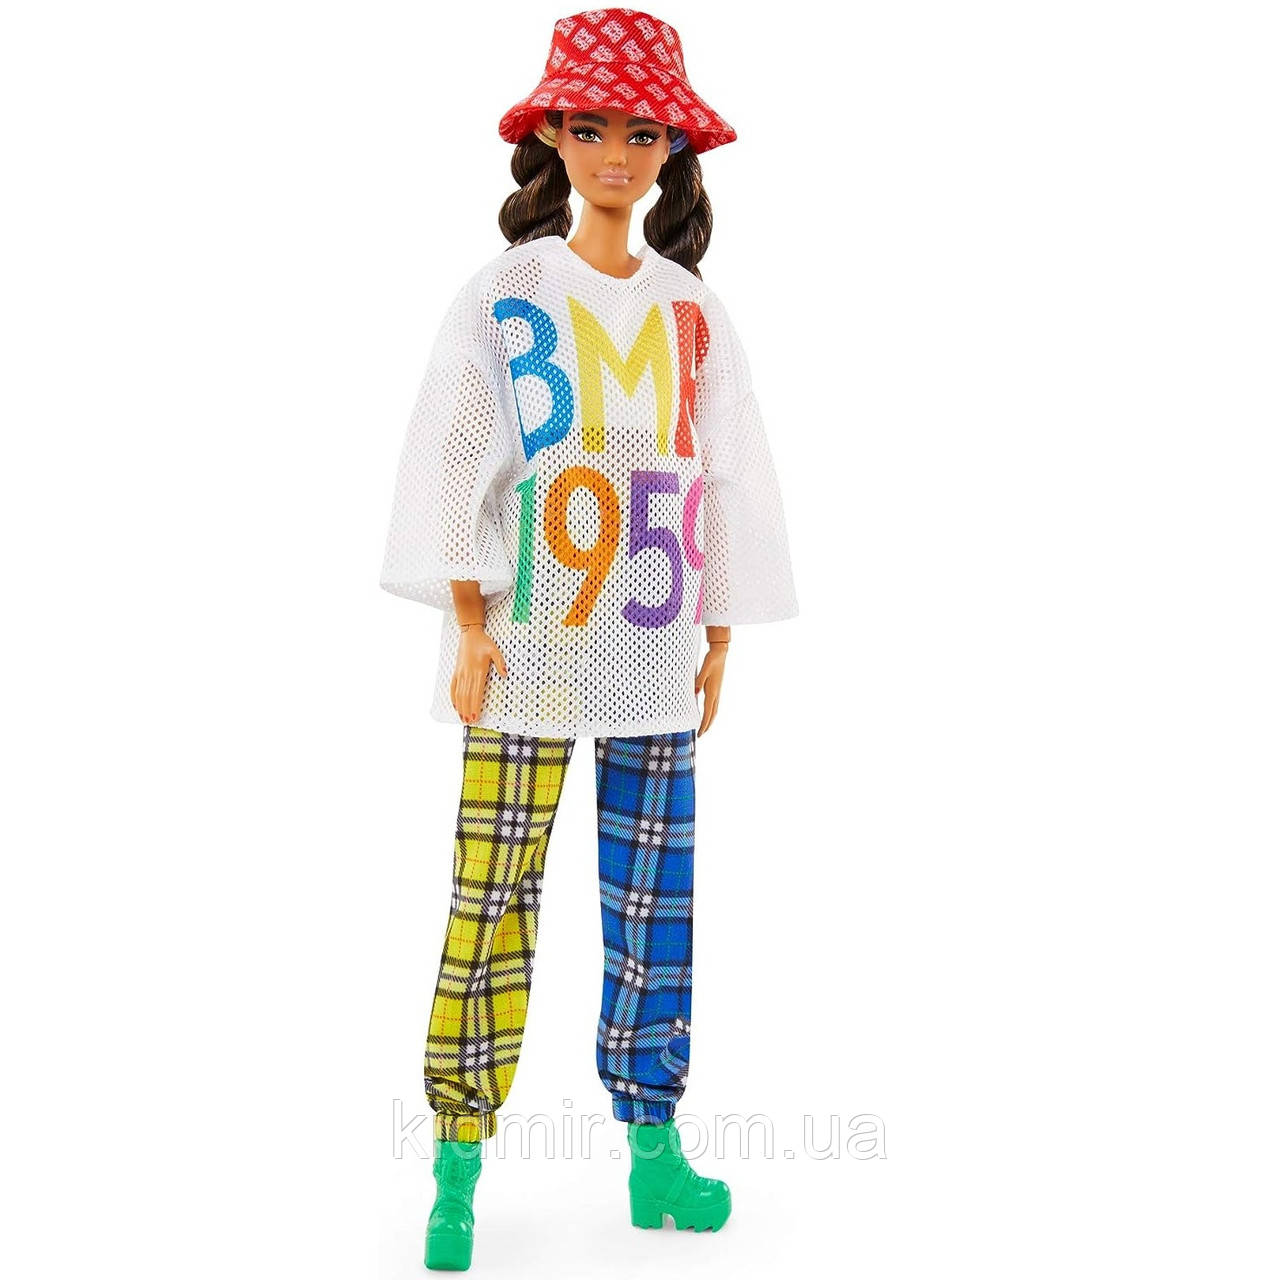 Лялька Барбі БМР у картатих штанах і панамі Barbie BMR1959 GNC48